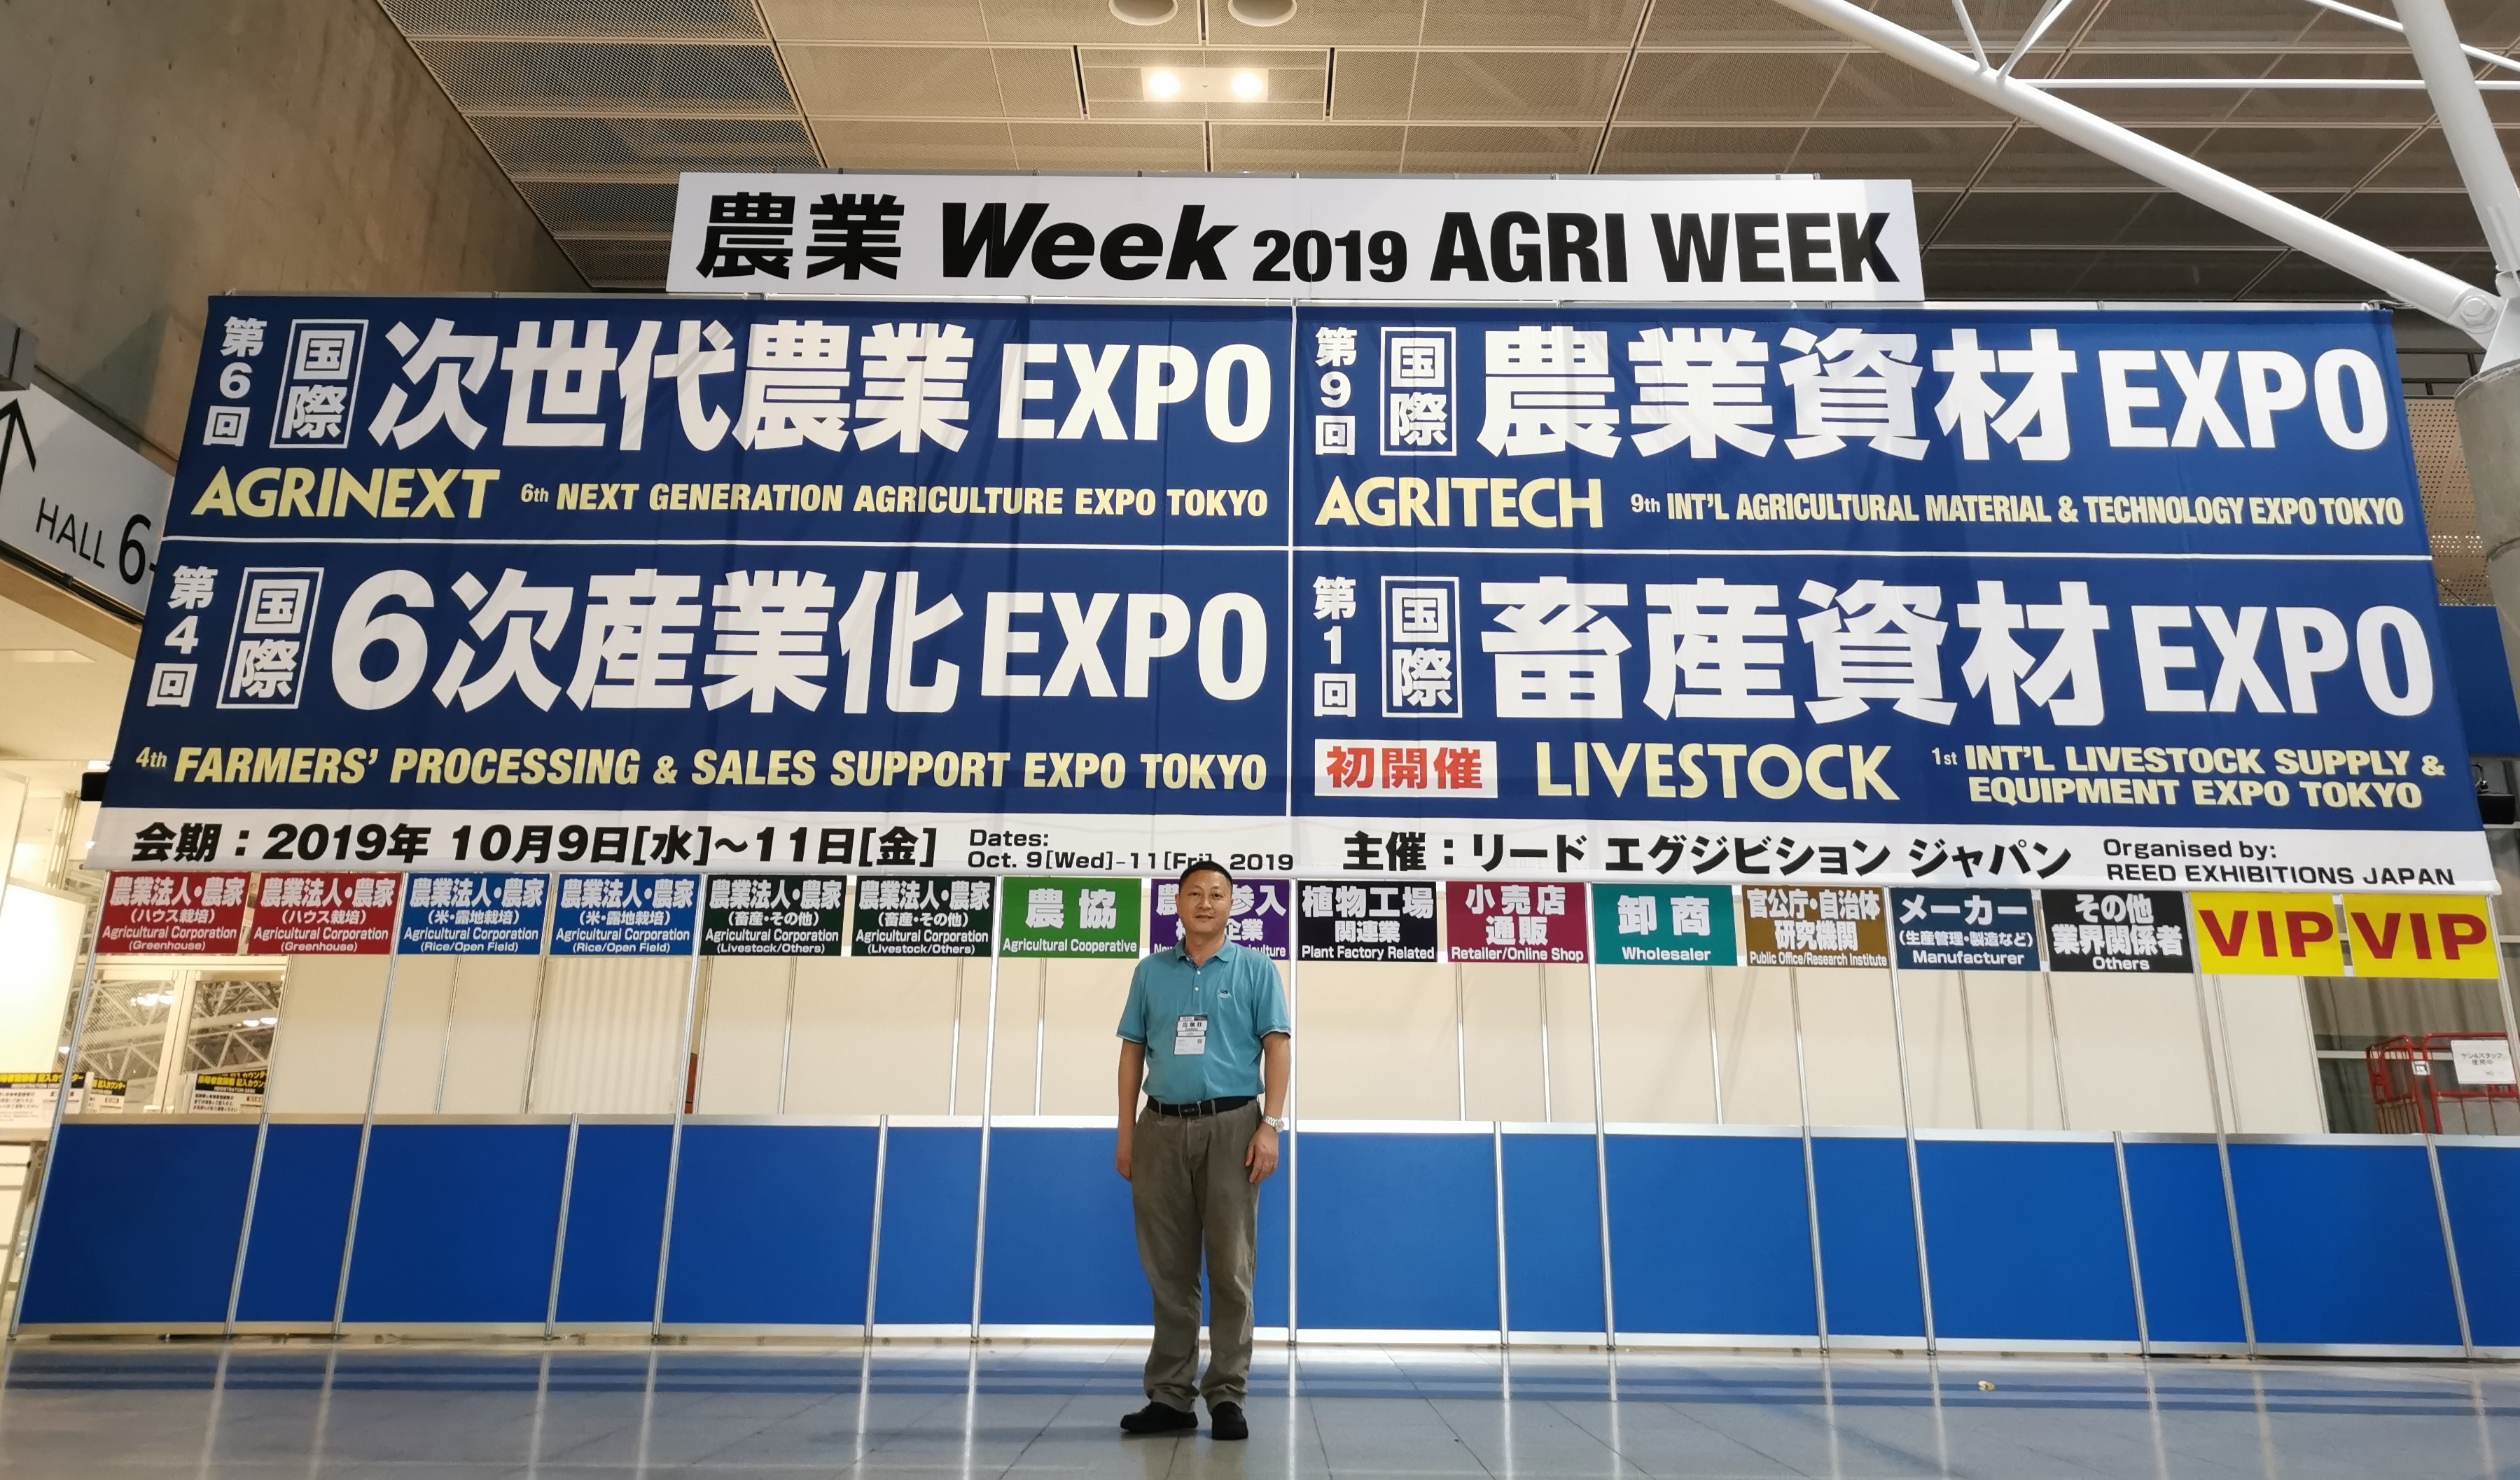 华芯机器人总公司受邀参加--日本农业周活动